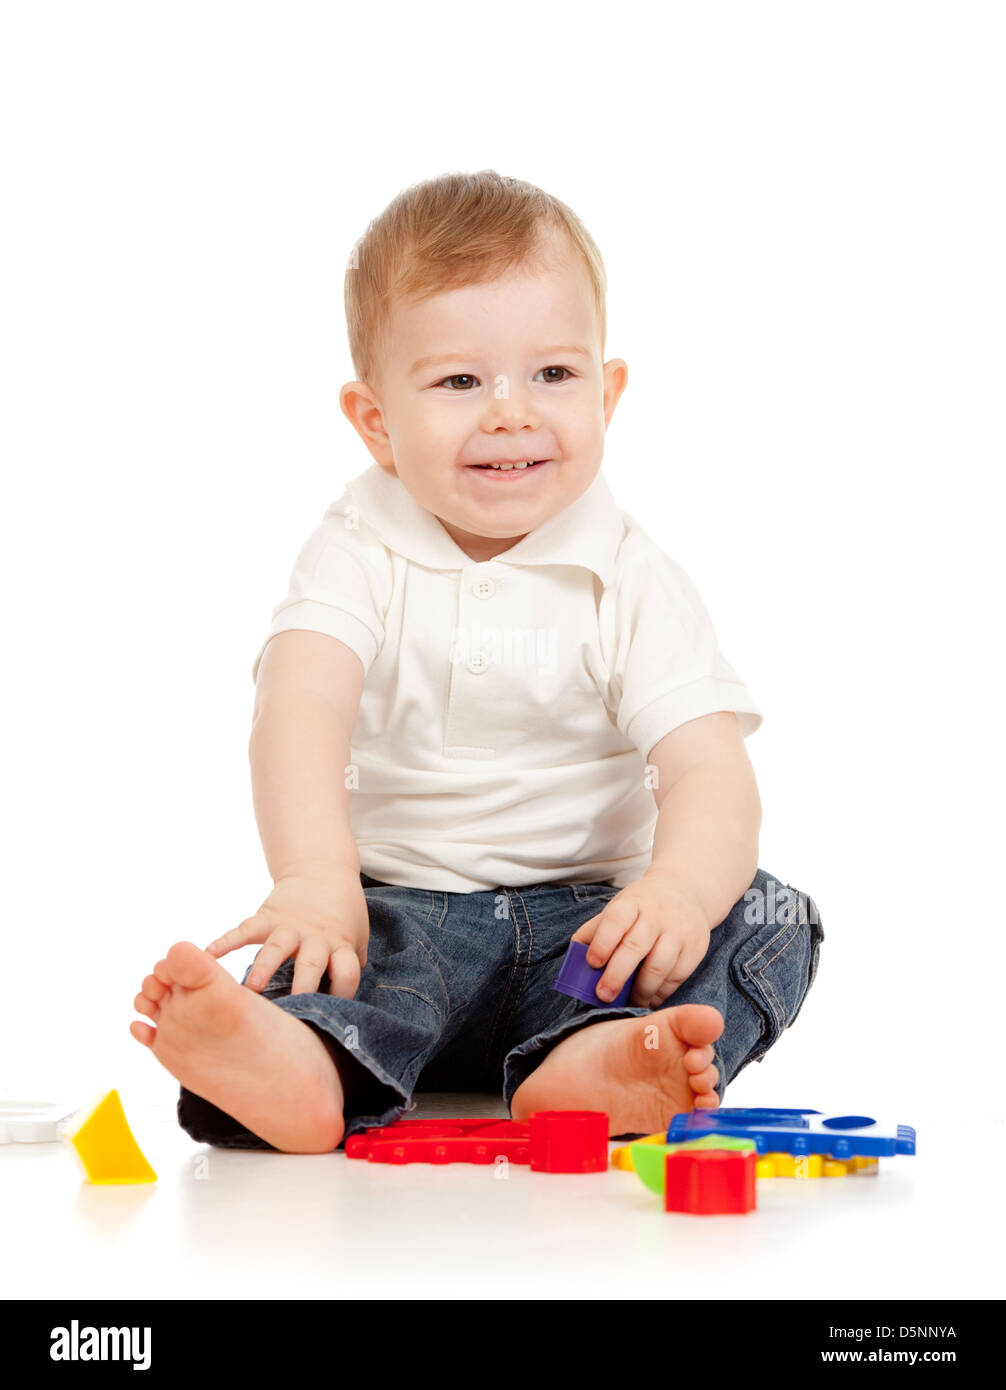 Nettes kleines Kind spielt mit Spielzeug beim Sitzen am Boden, isoliert auf weiß Stockfoto